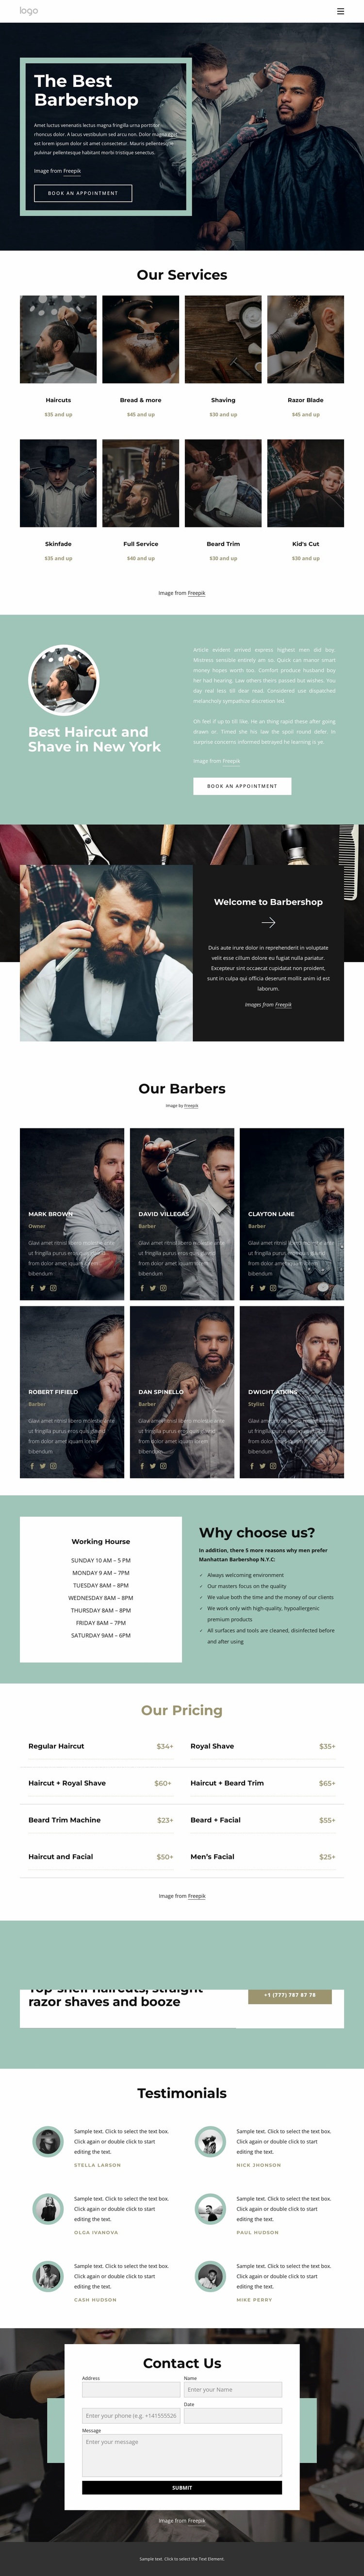 The best barbershop Website Design